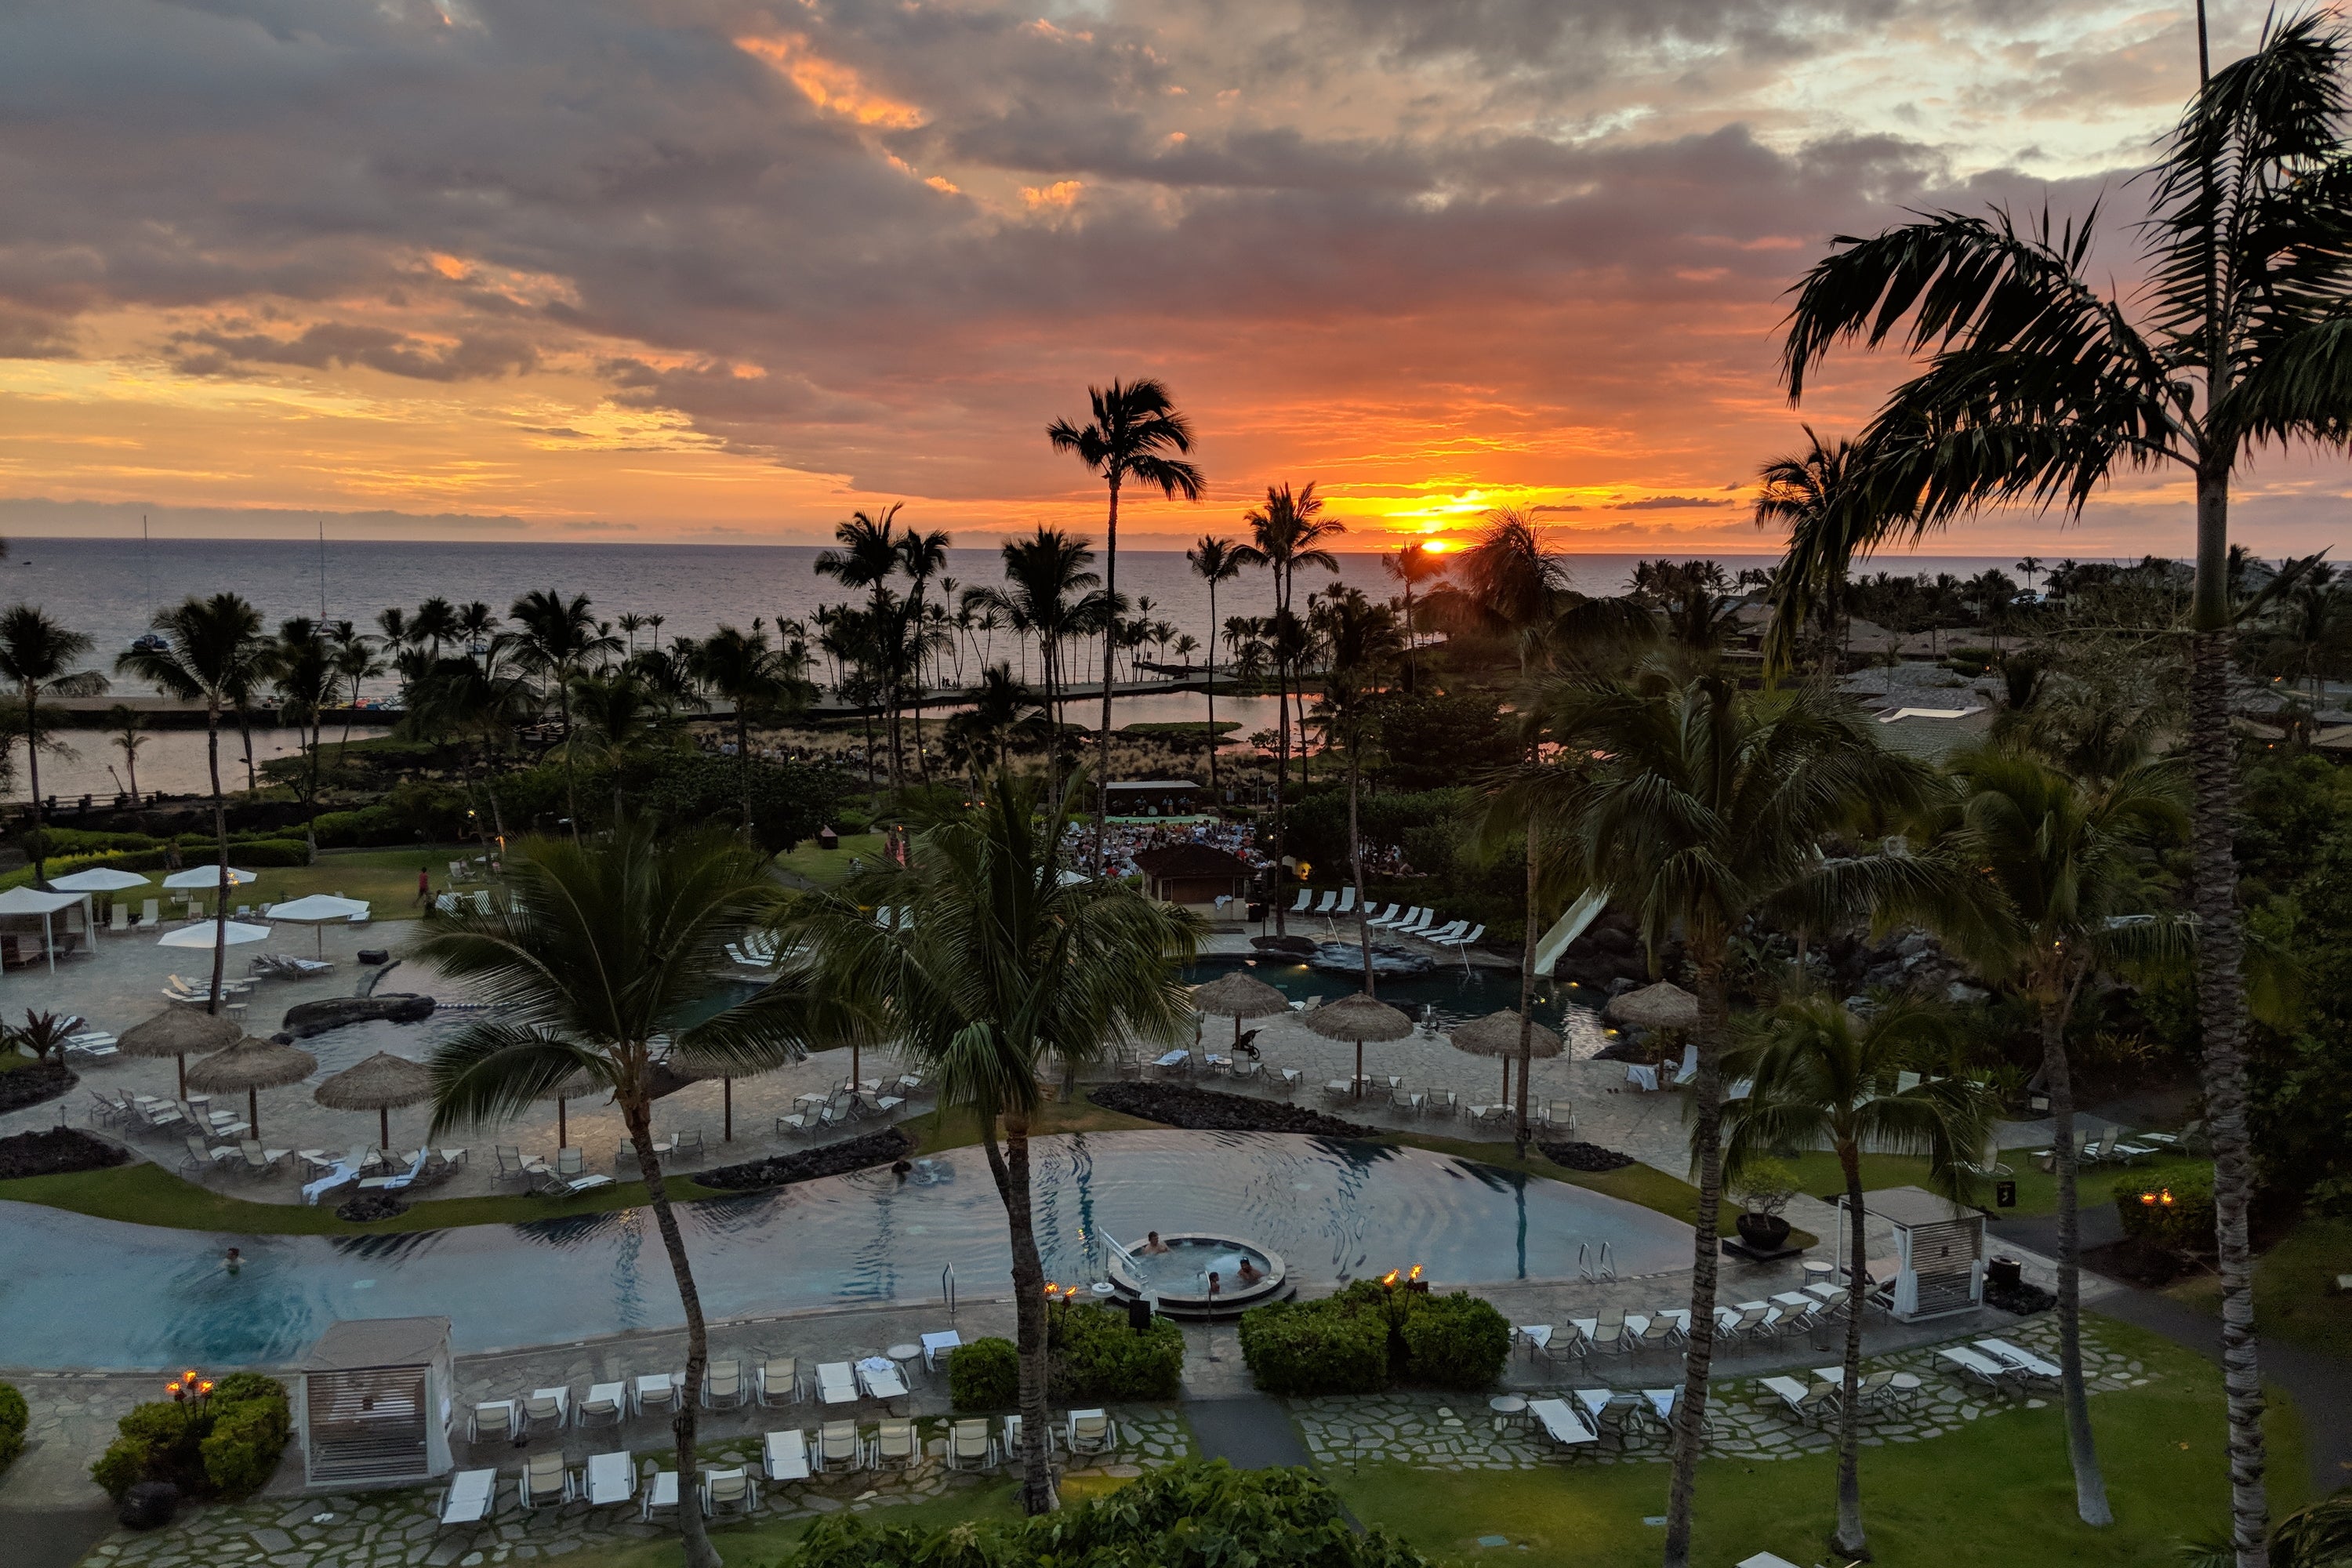 A Review of the Waikoloa Beach Marriott Resort Hawaii